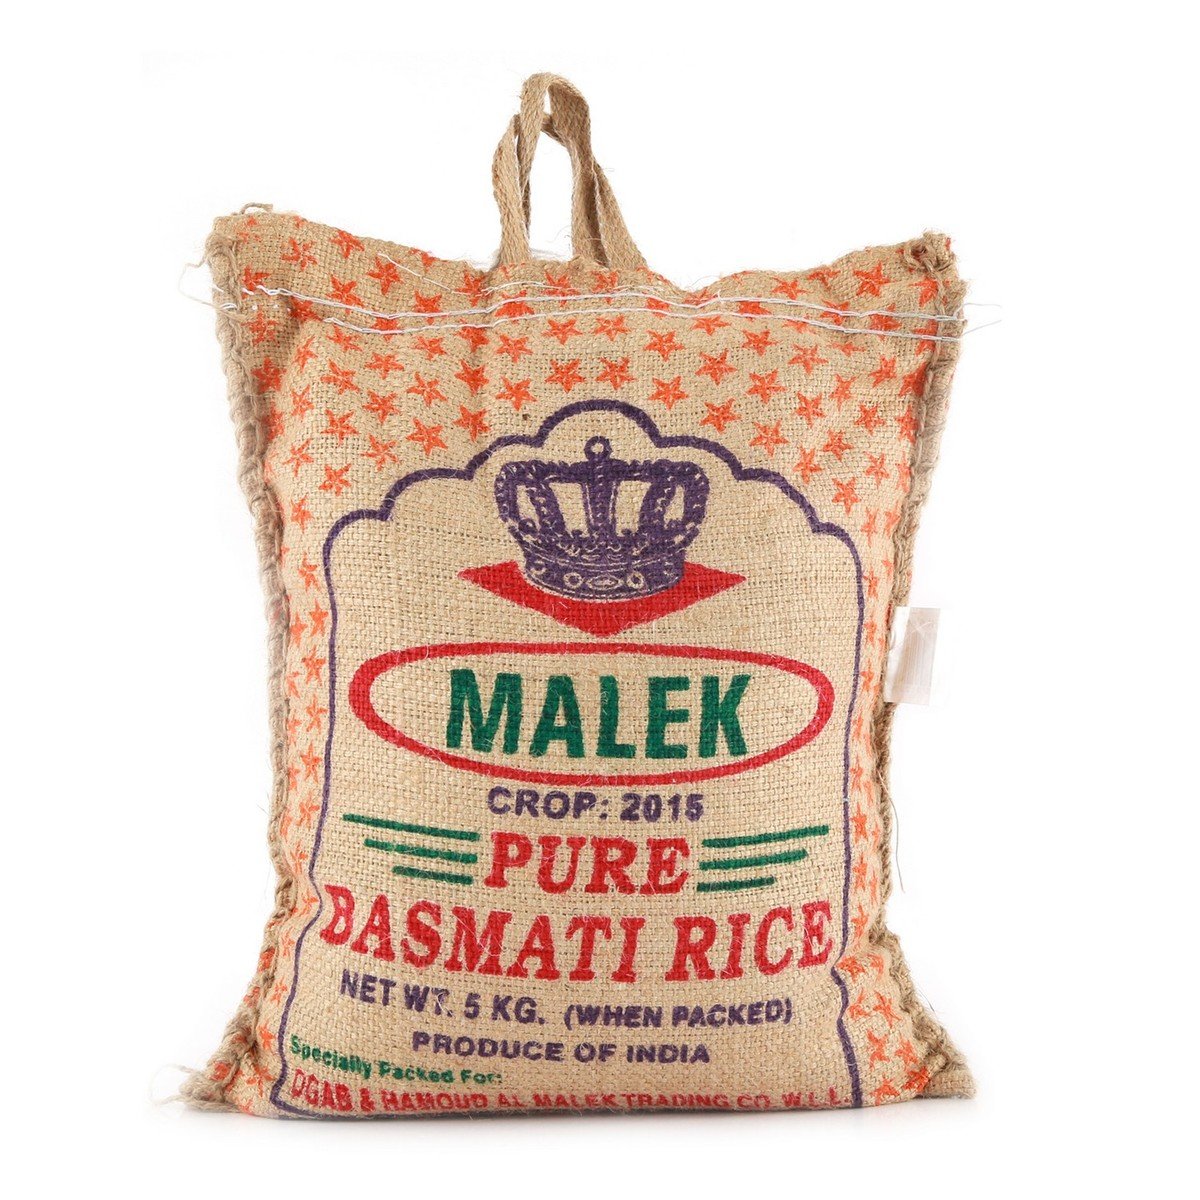 Malek Pure Basmati Rice 5 kg